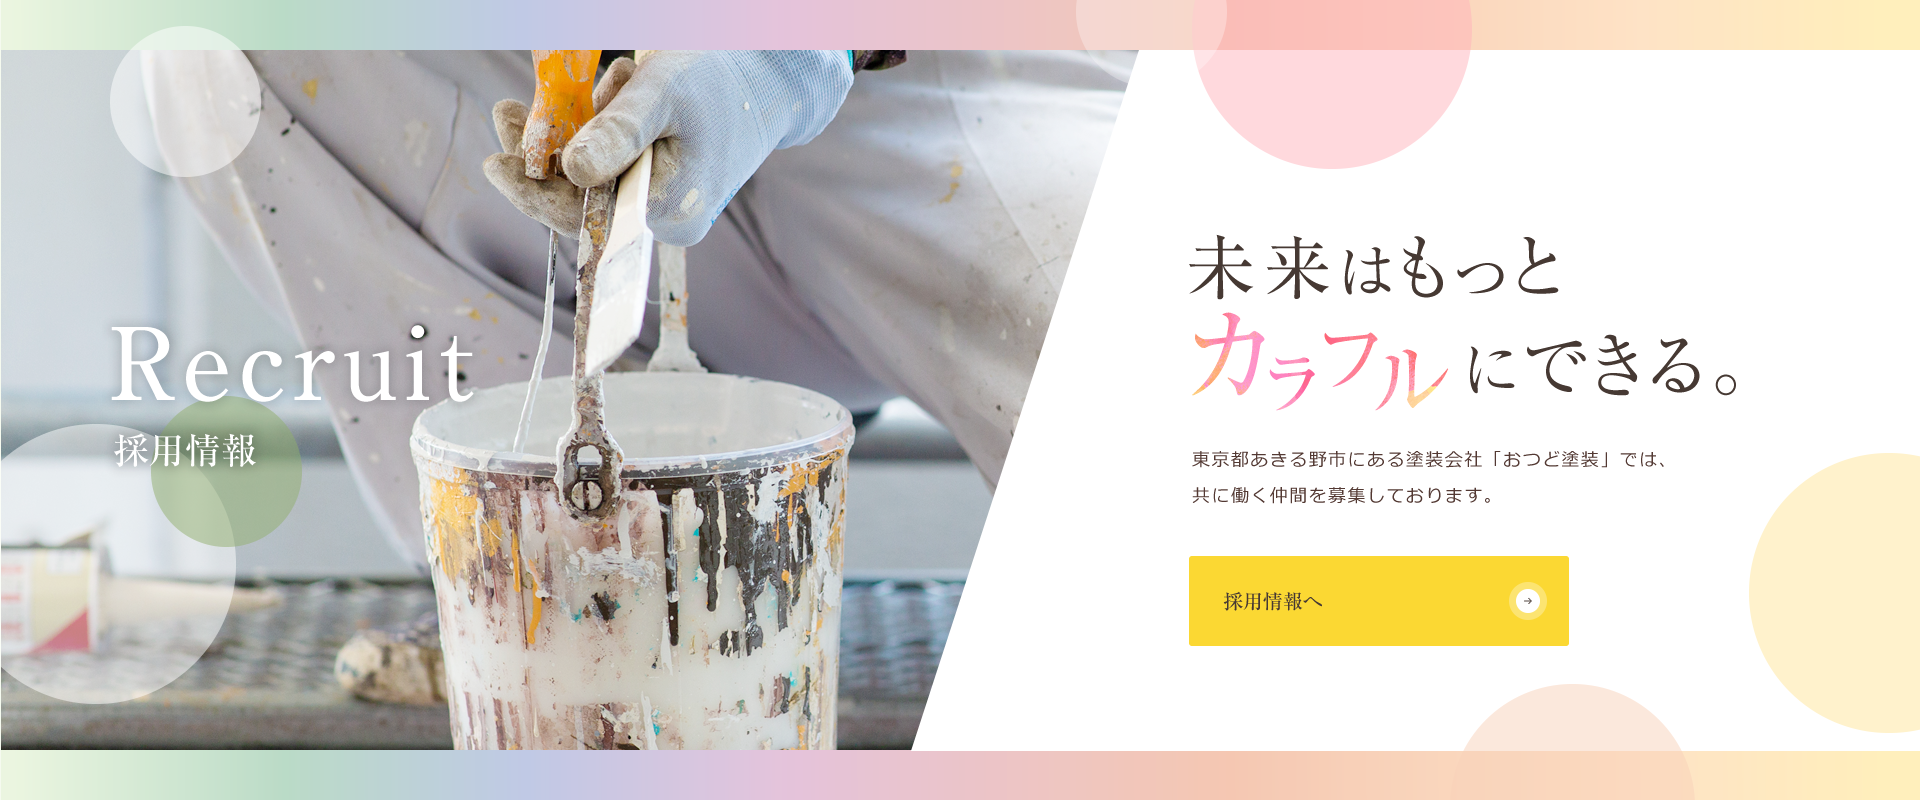 Recruit 採用情報 未来はもっとカラフルにできる。東京都あきる野市にある塗装会社「おつど塗装」では、共に働く仲間を募集しております。【採用情報へ】
